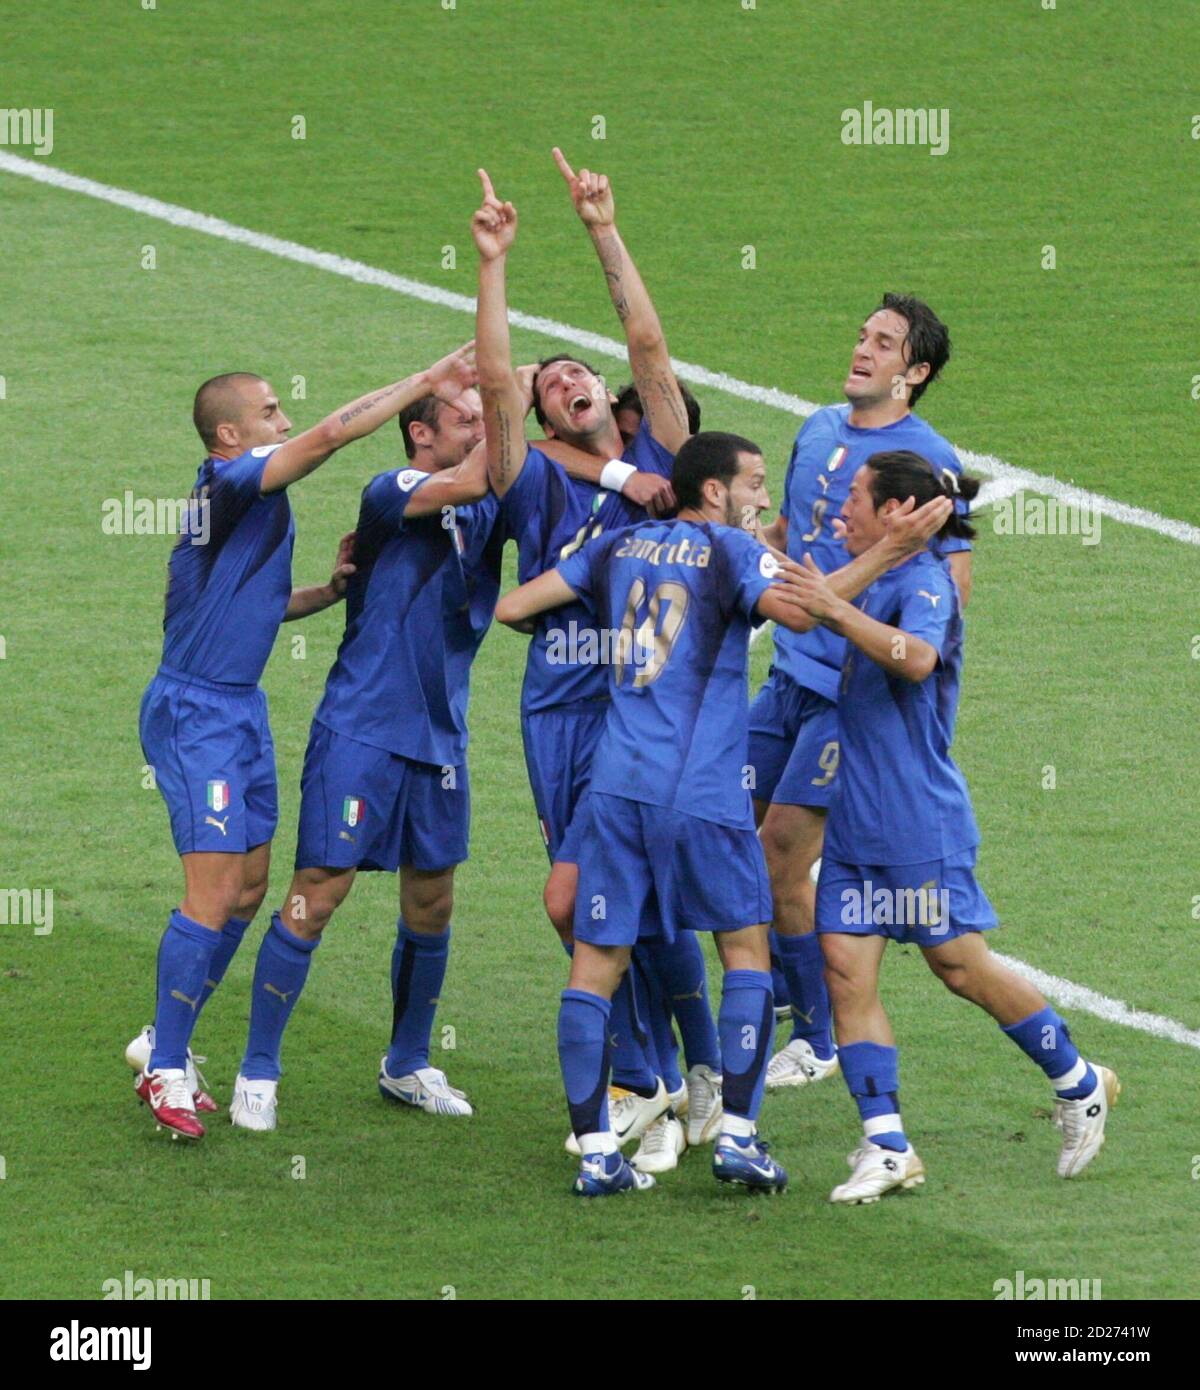 Marco Materazzi (C) in Italia celebra il suo obiettivo contro la Francia con i compagni di squadra durante la loro partita di calcio finale della Coppa del mondo 2006 a Berlino il 9 luglio 2006. RESTRIZIONI FIFA - NESSUN UTILIZZO MOBILE REUTERS/Alessandro Bianchi (GERMANIA) Foto Stock